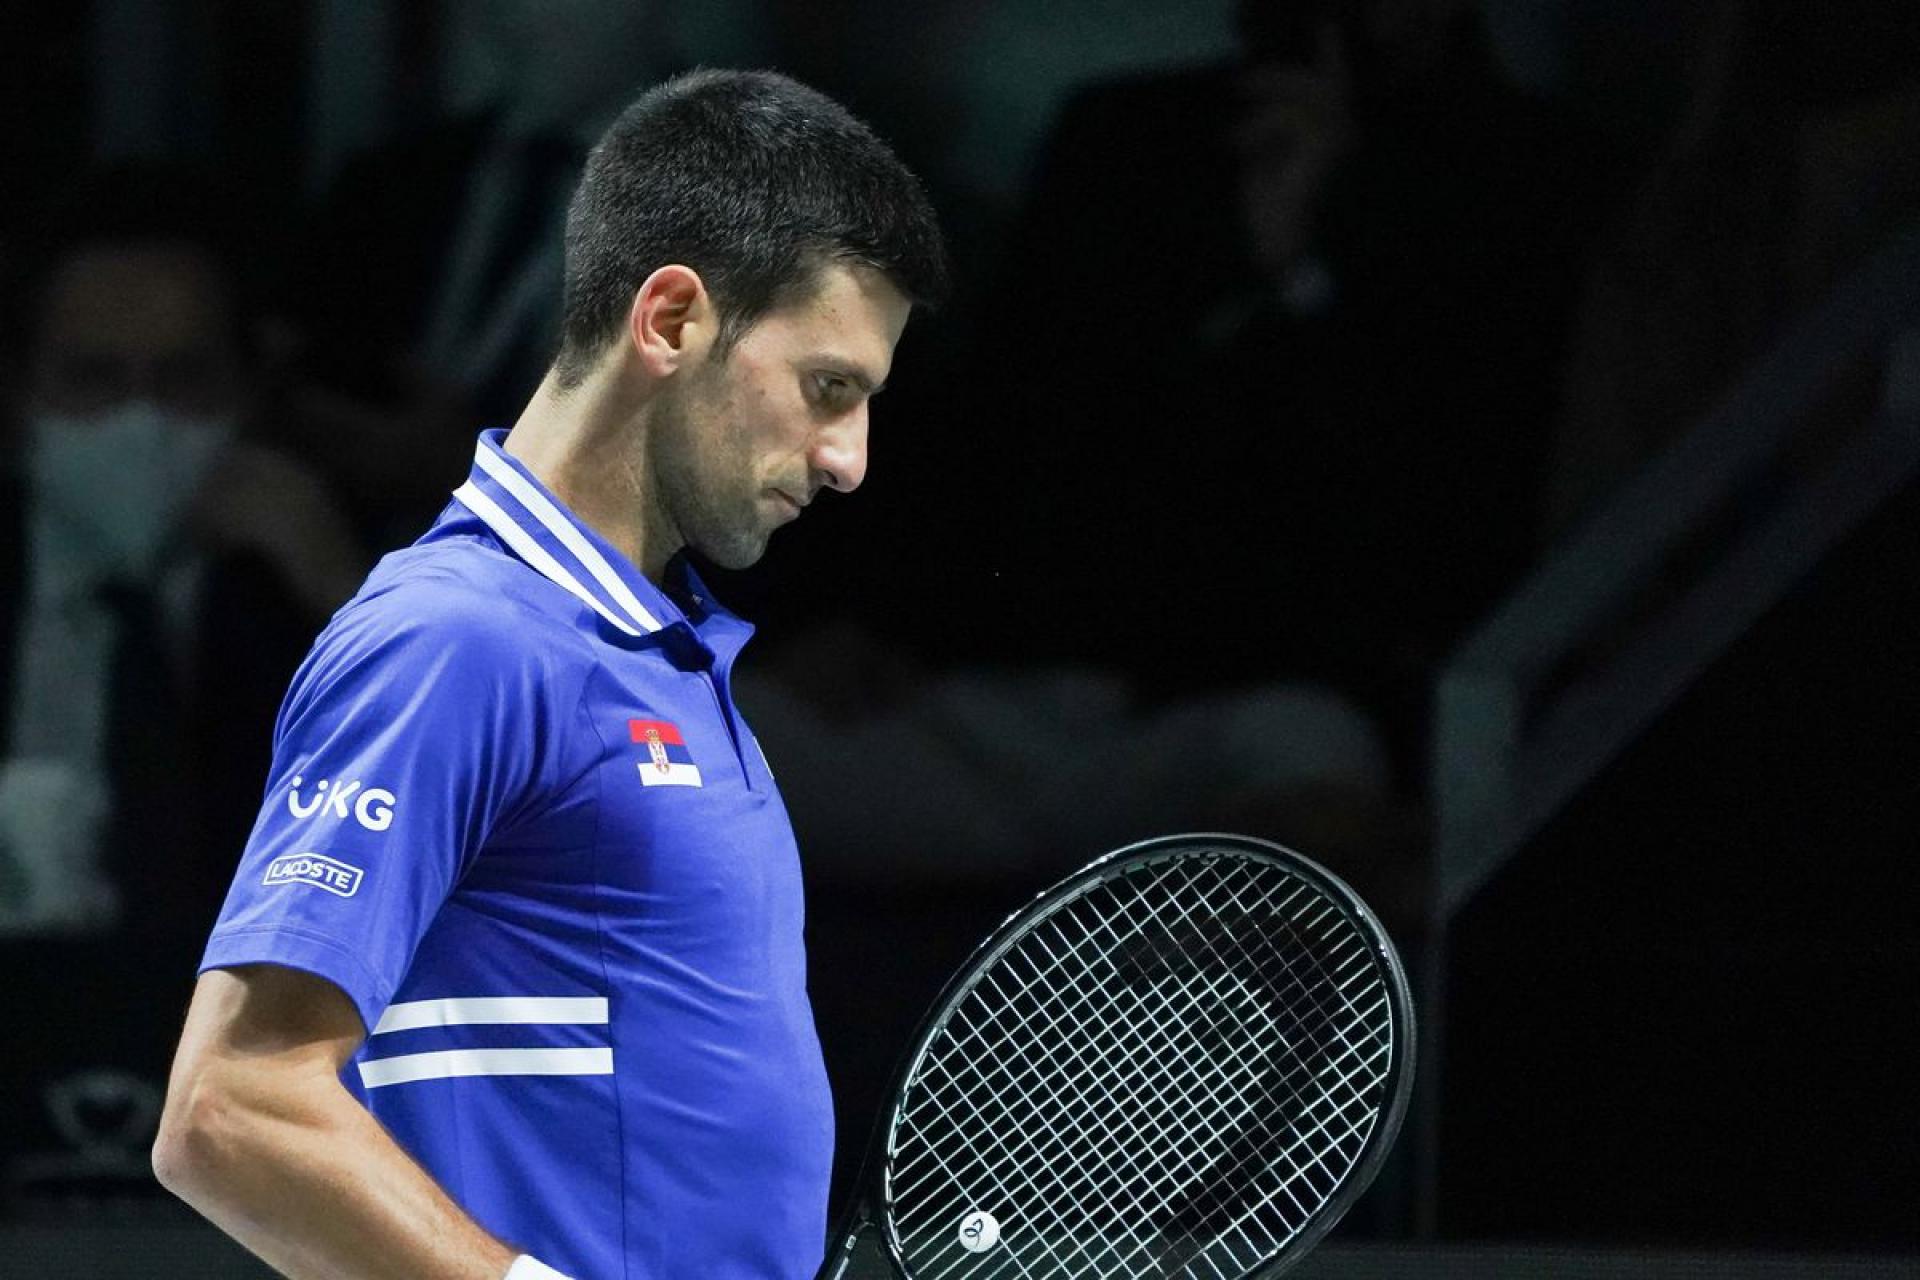 TRỰC TIẾP phiên điều trần thứ 2 của Djokovic ở Australia: Luật sư của Nole trình bày - Ảnh 11